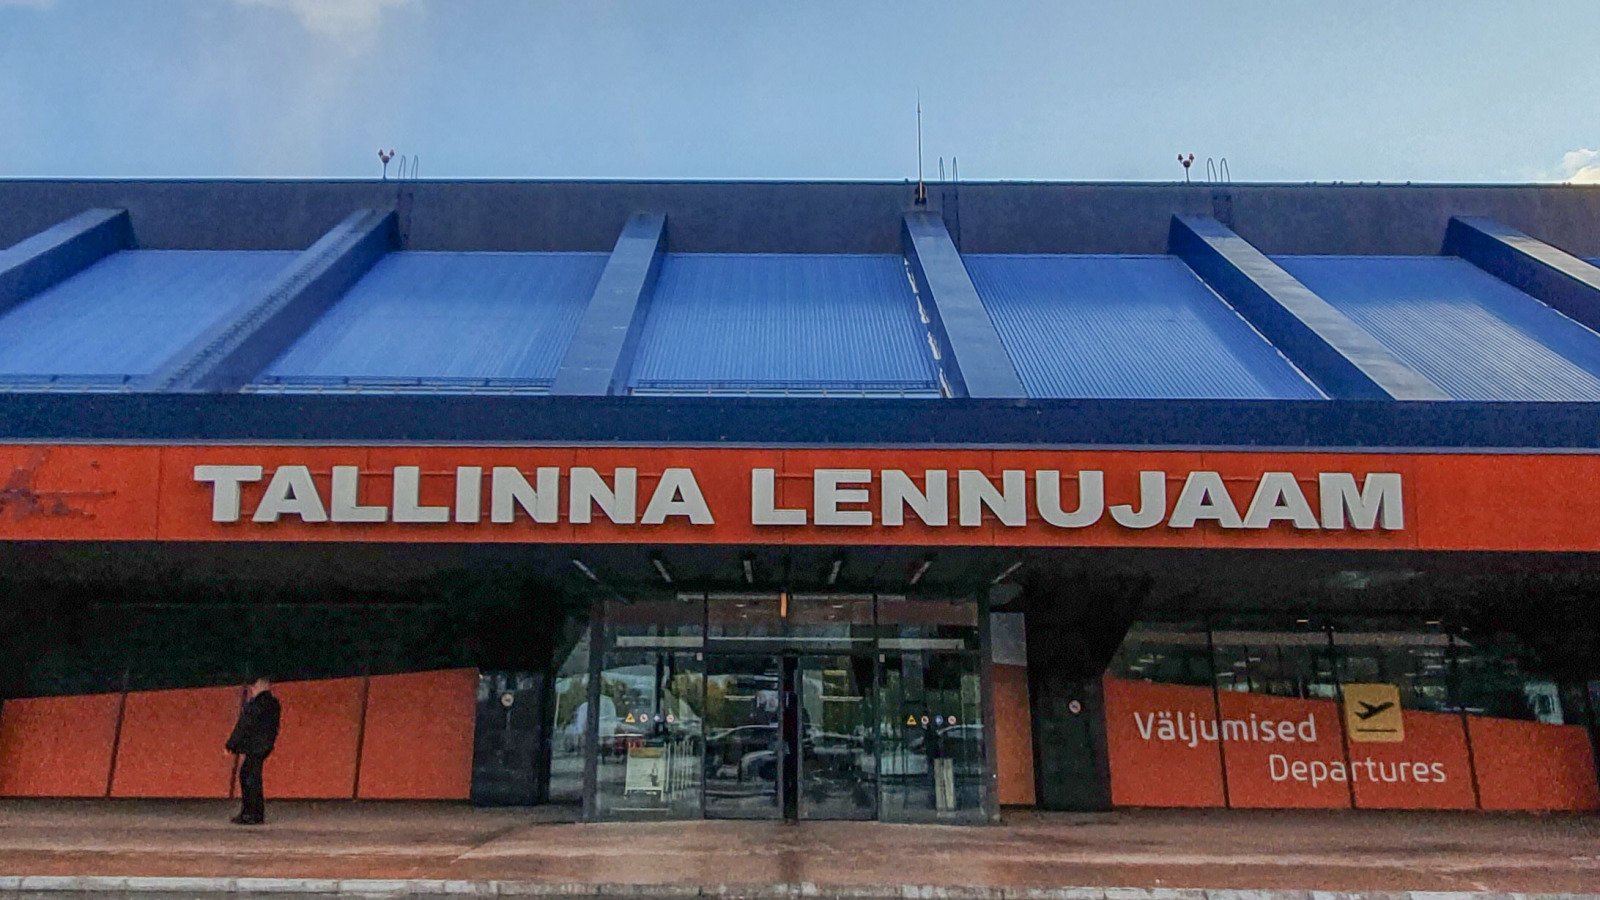 Flughafen Tallinn-(Tallinna Lennujaam)